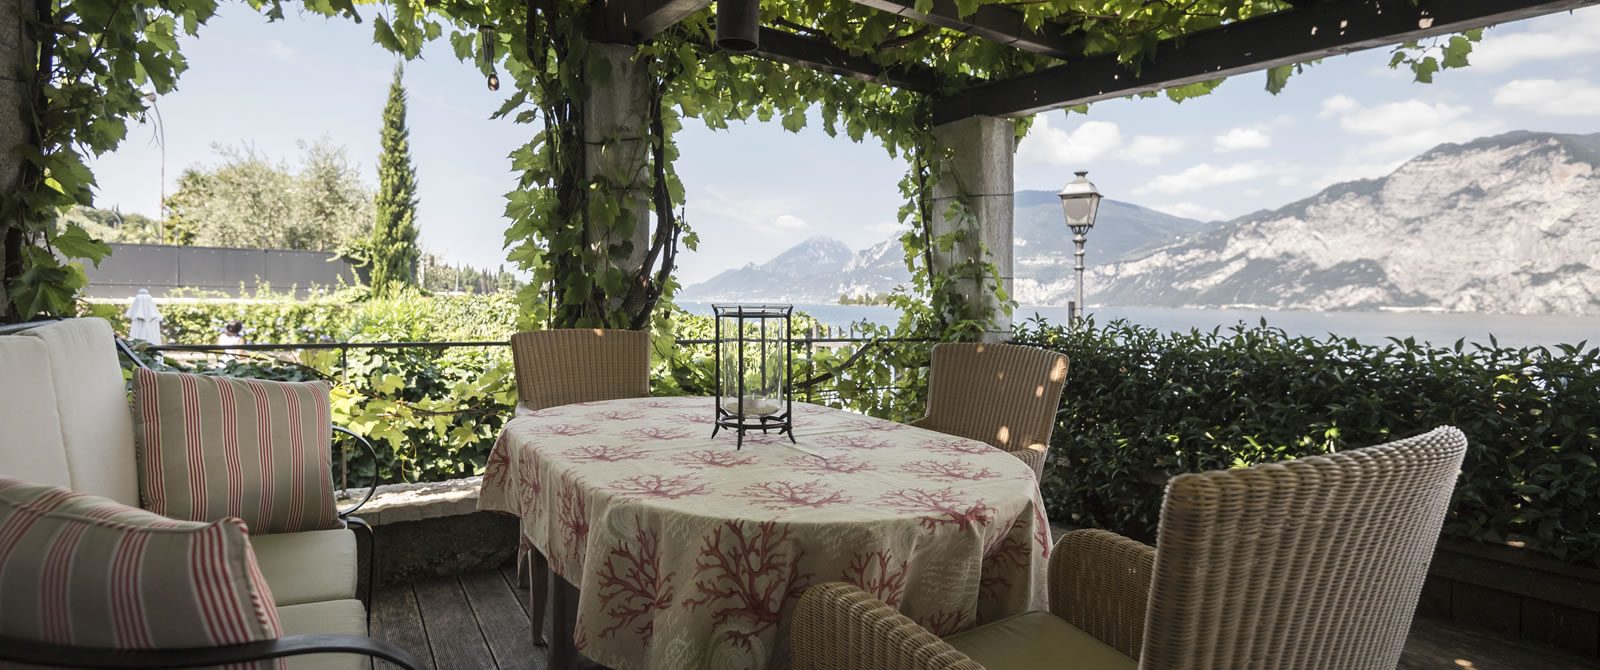 Ferienhaus am Gardasee - Luxuriöse Ausstattung